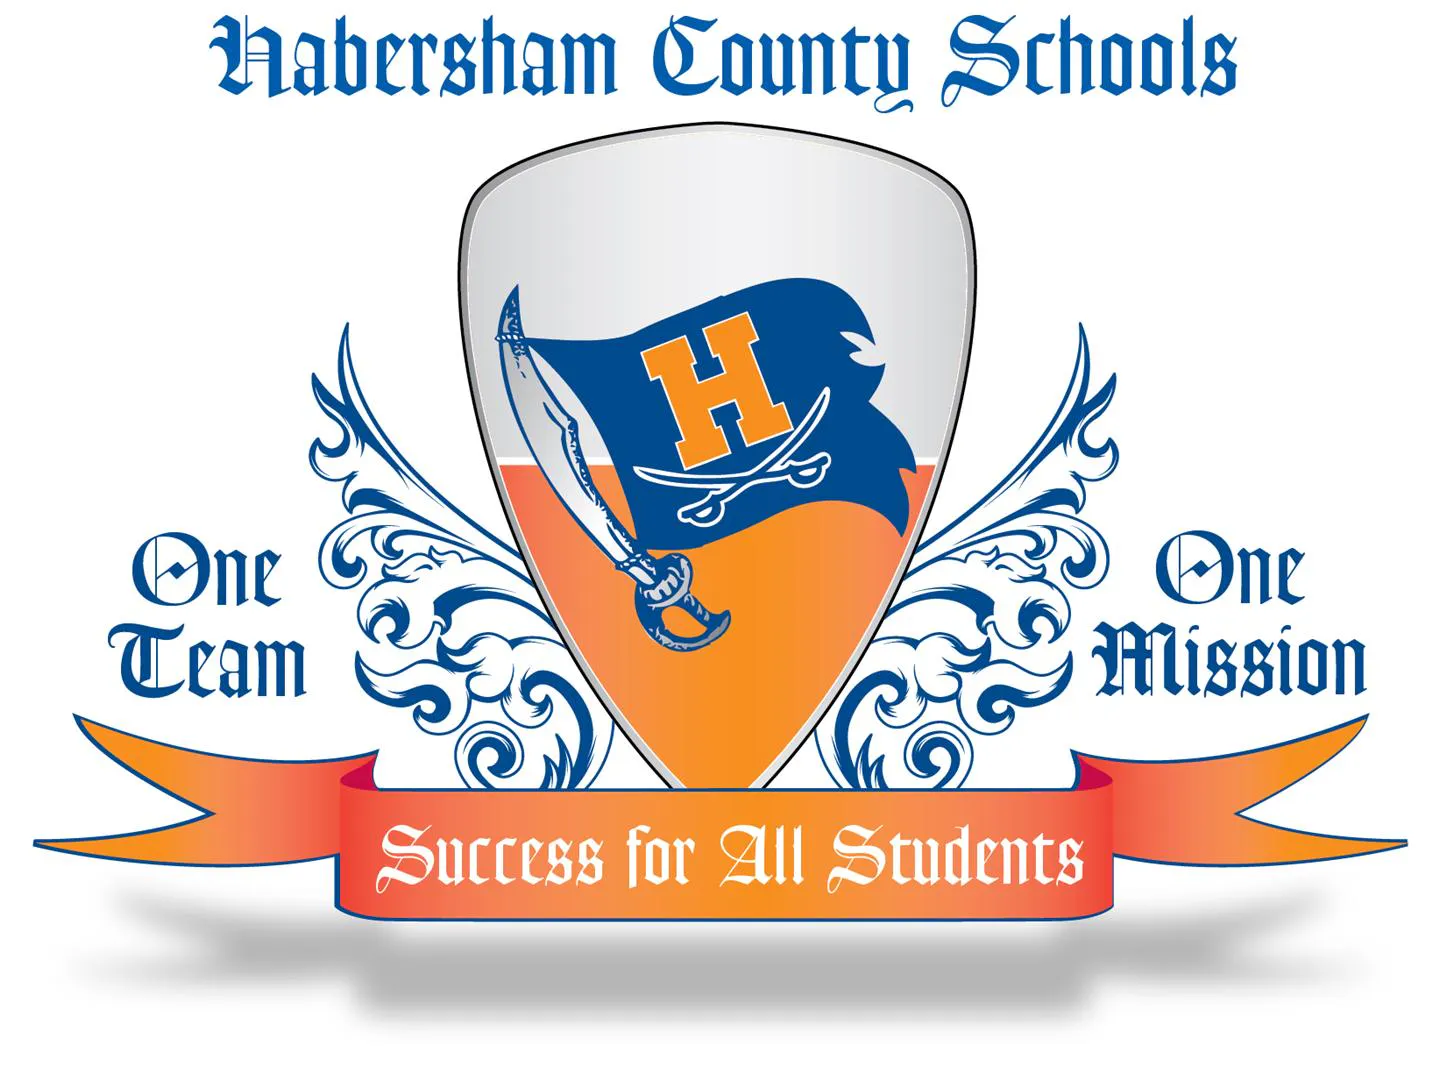 Habersham County